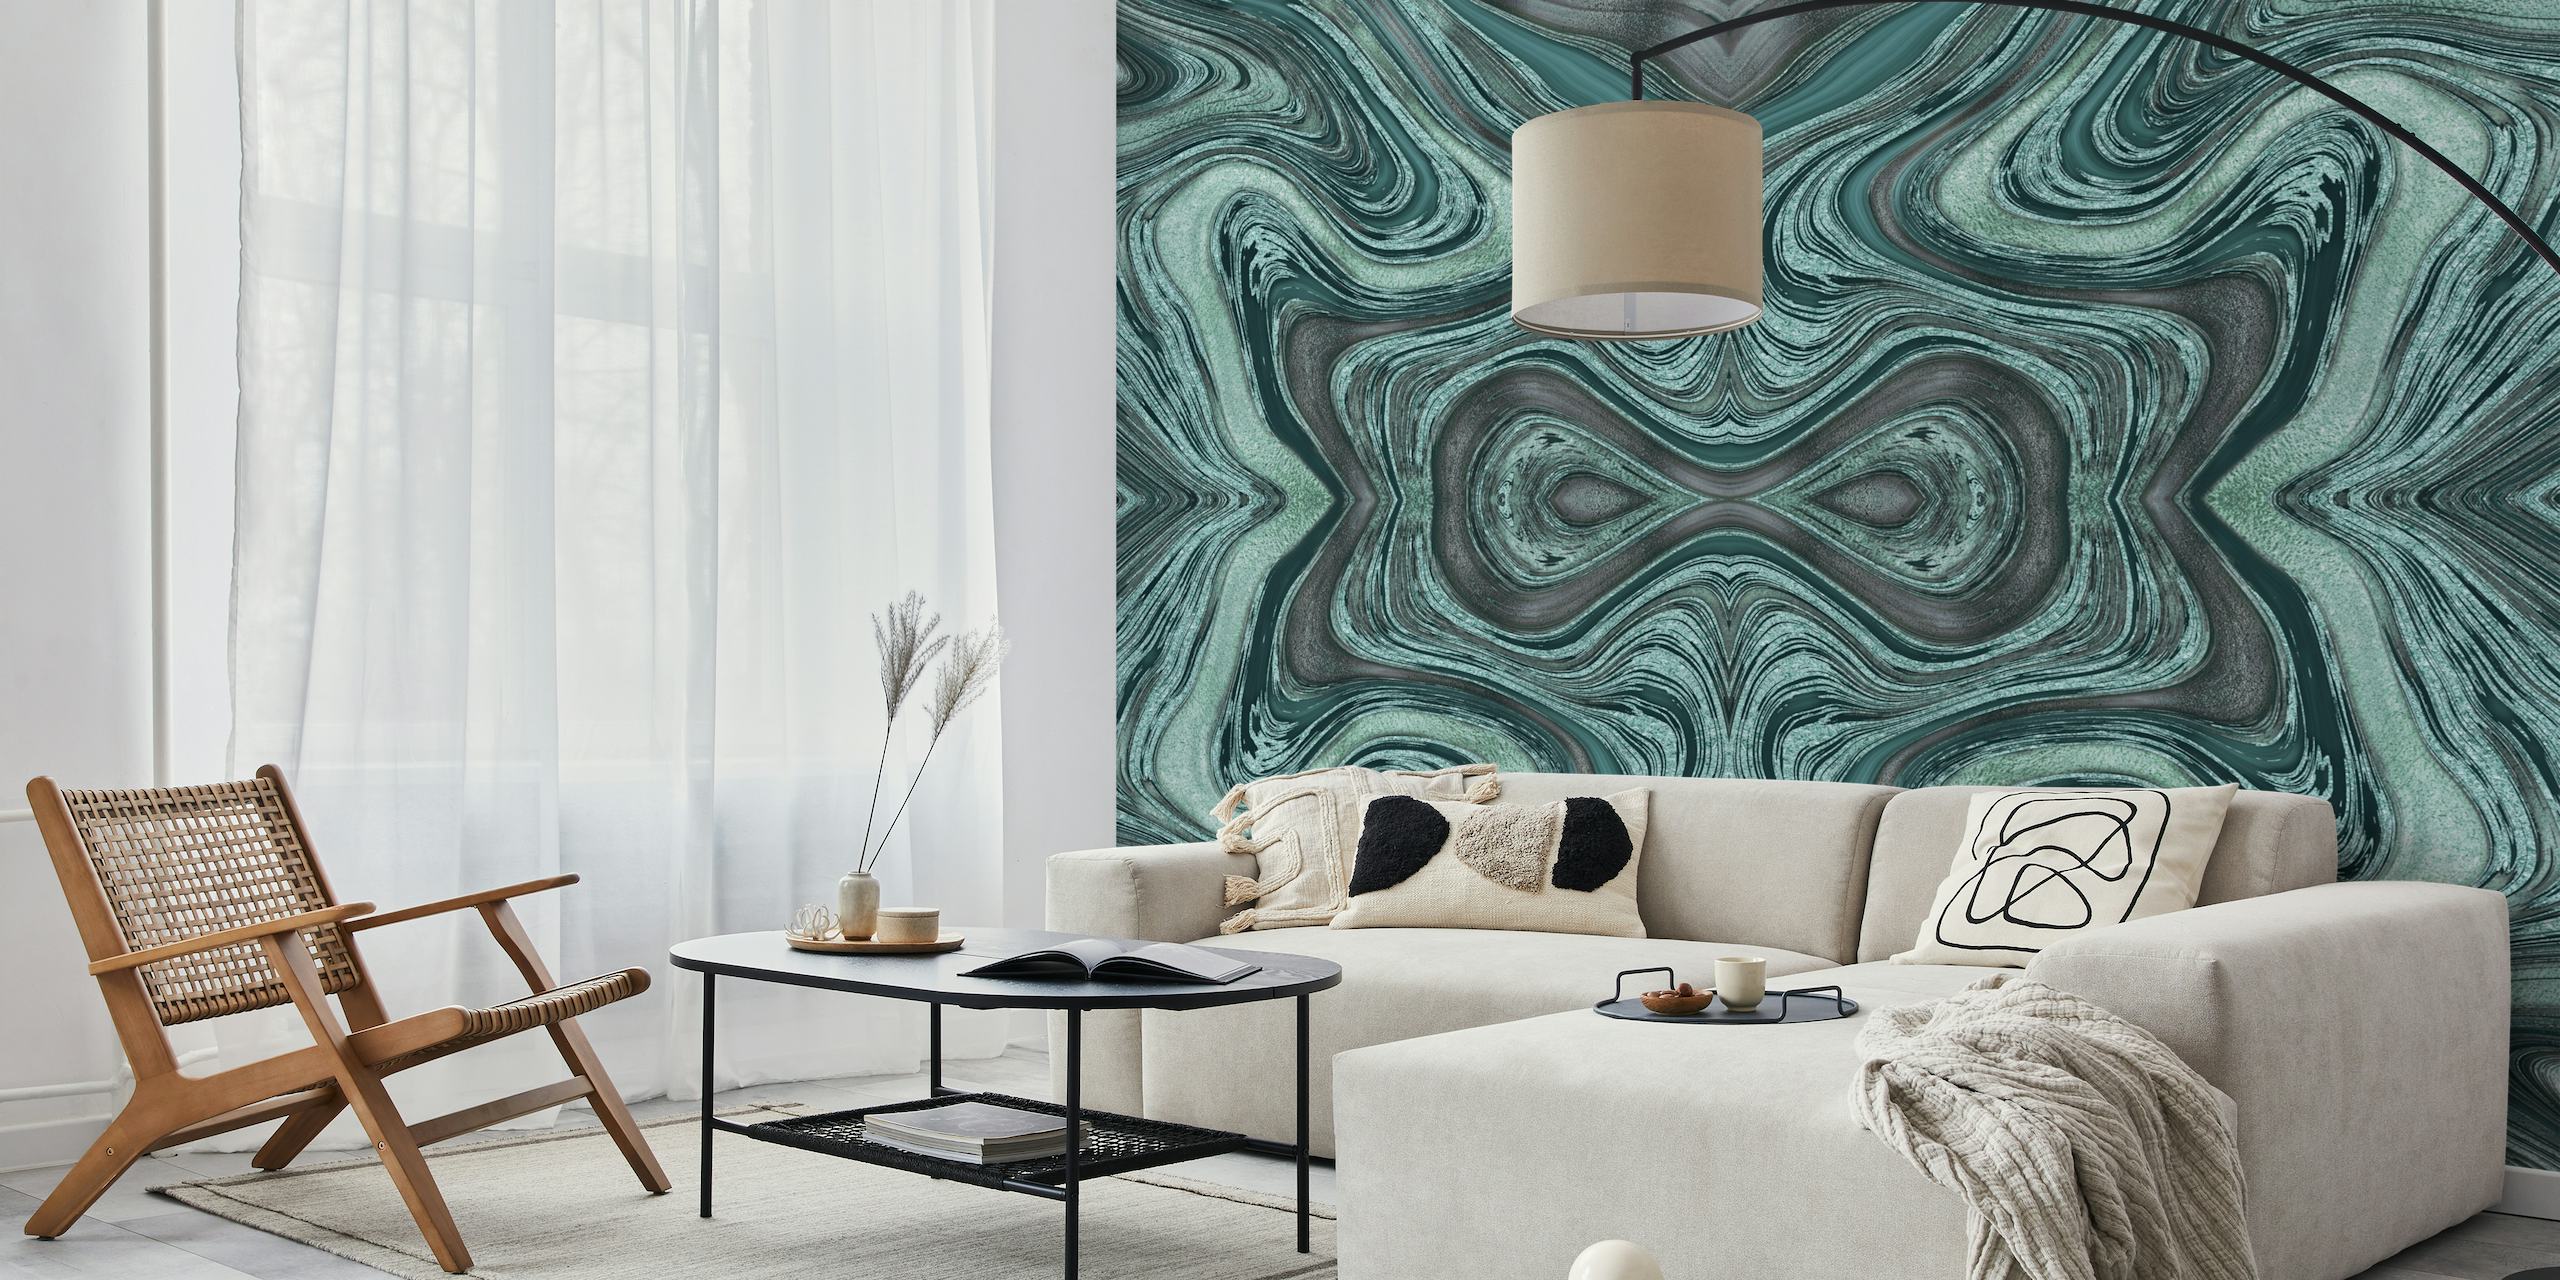 Abstract Glamour River Turquoise seinämaalaus, jossa on rauhoittavia aaltoilevia kuvioita turkoosin, harmaan ja valkoisen sävyissä.